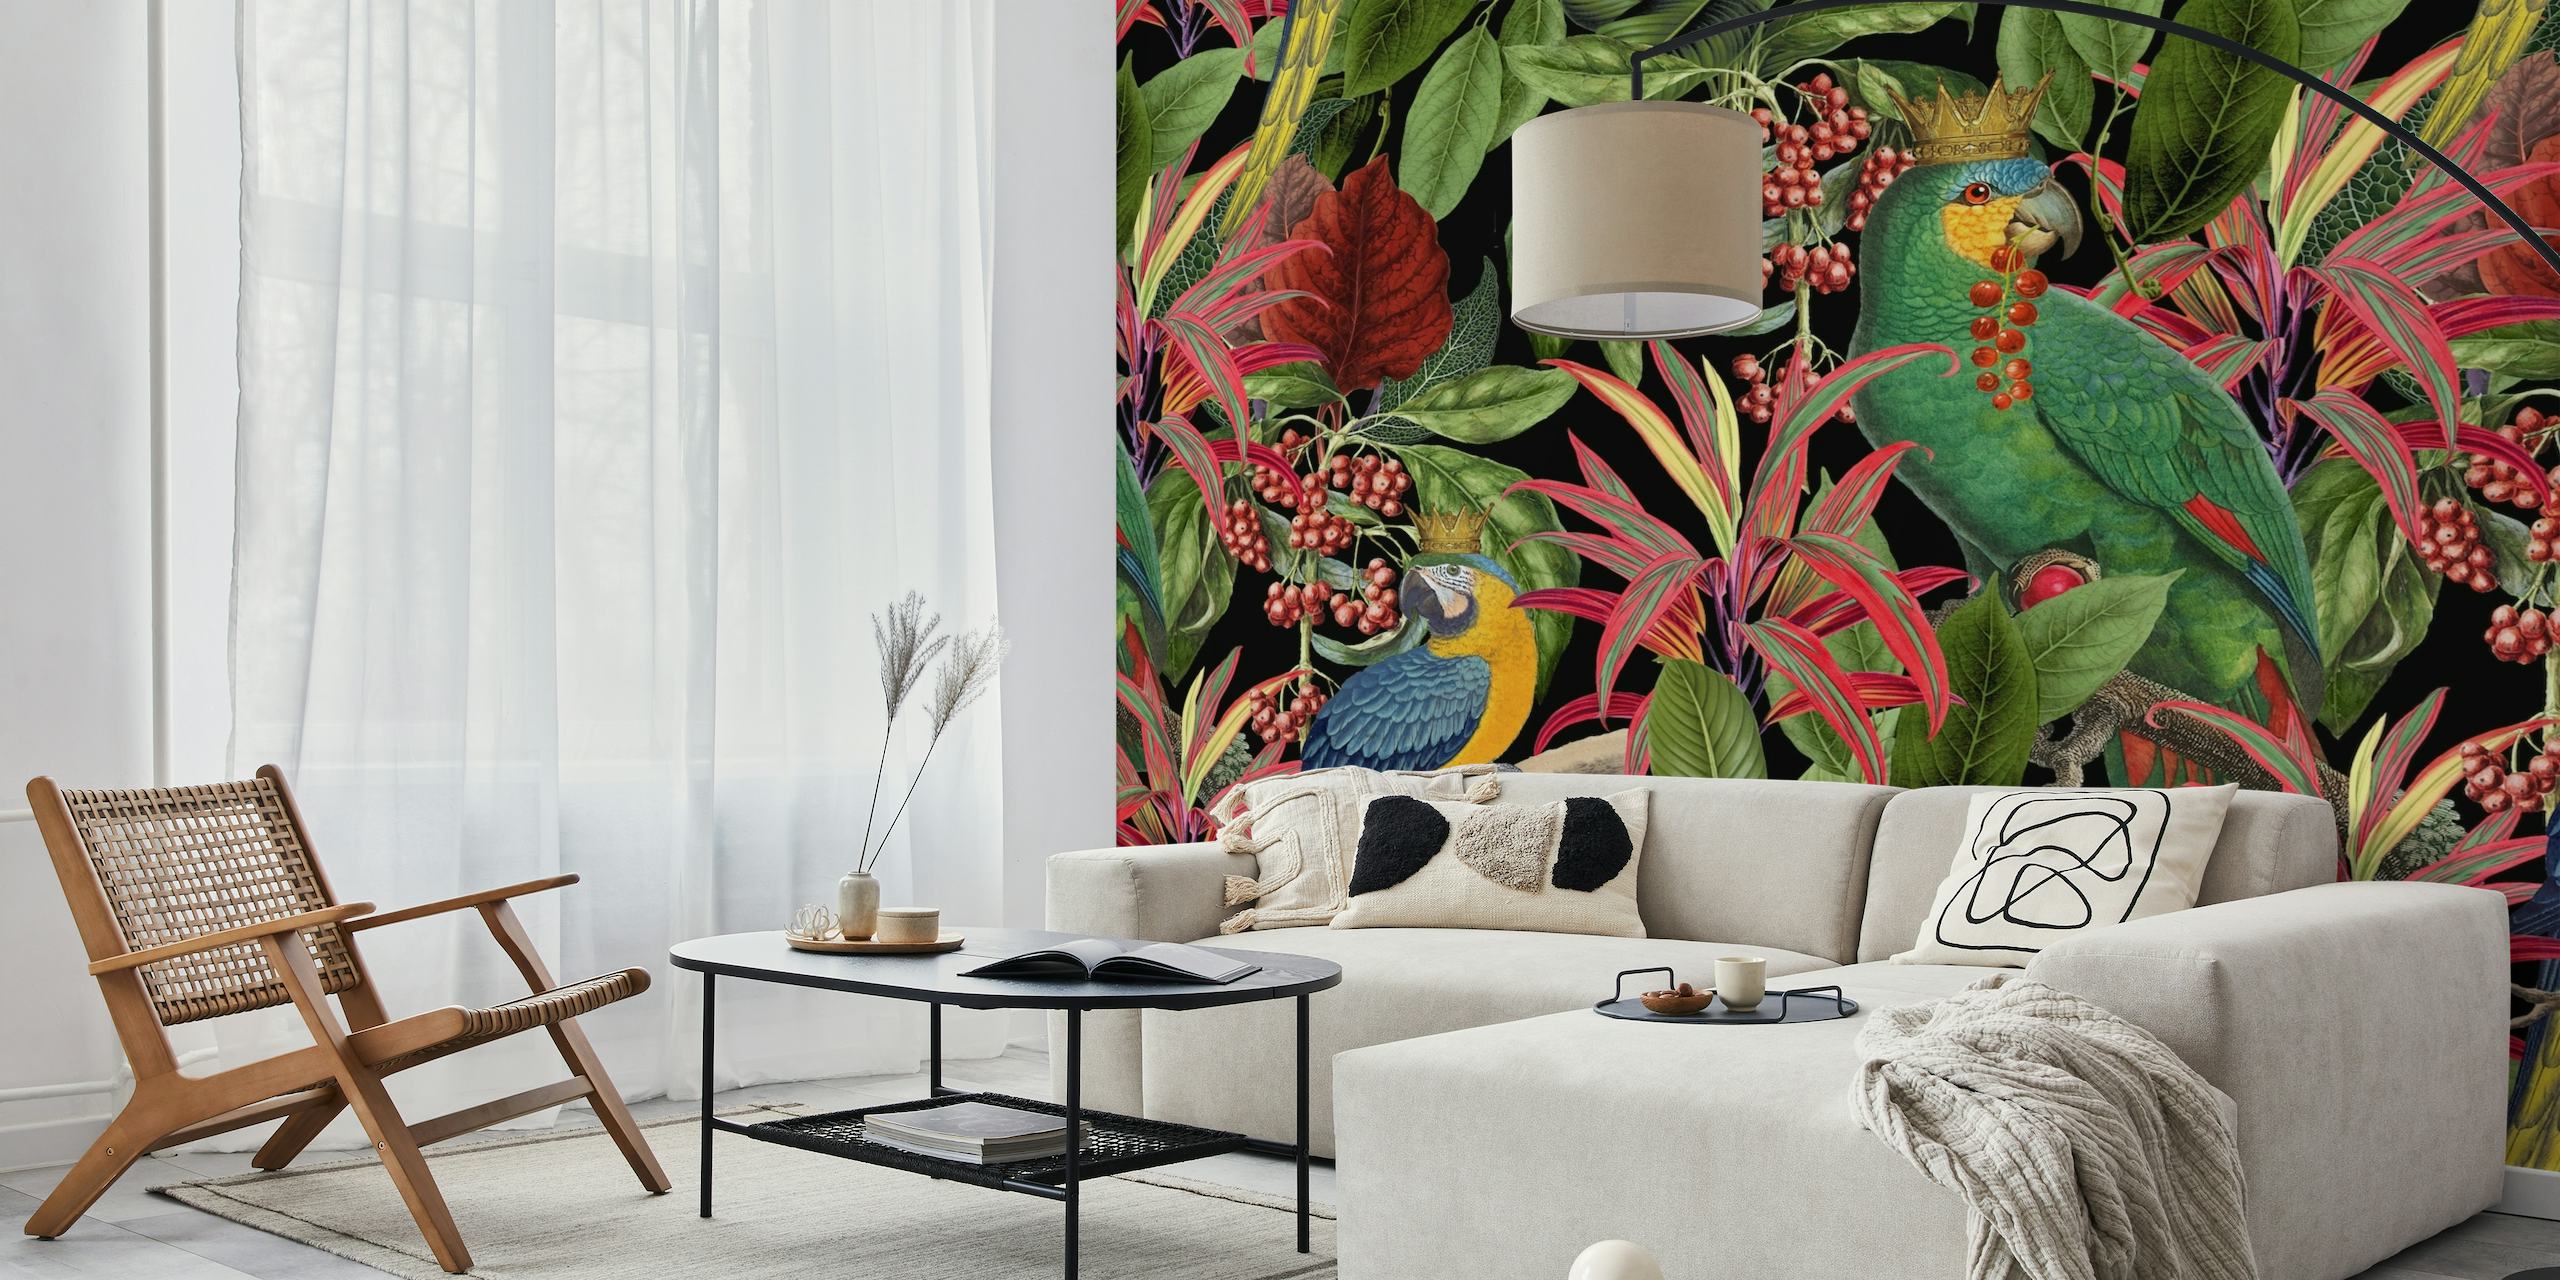 Farverigt vægmaleri med papegøjetema i omgivelser med tropisk løv